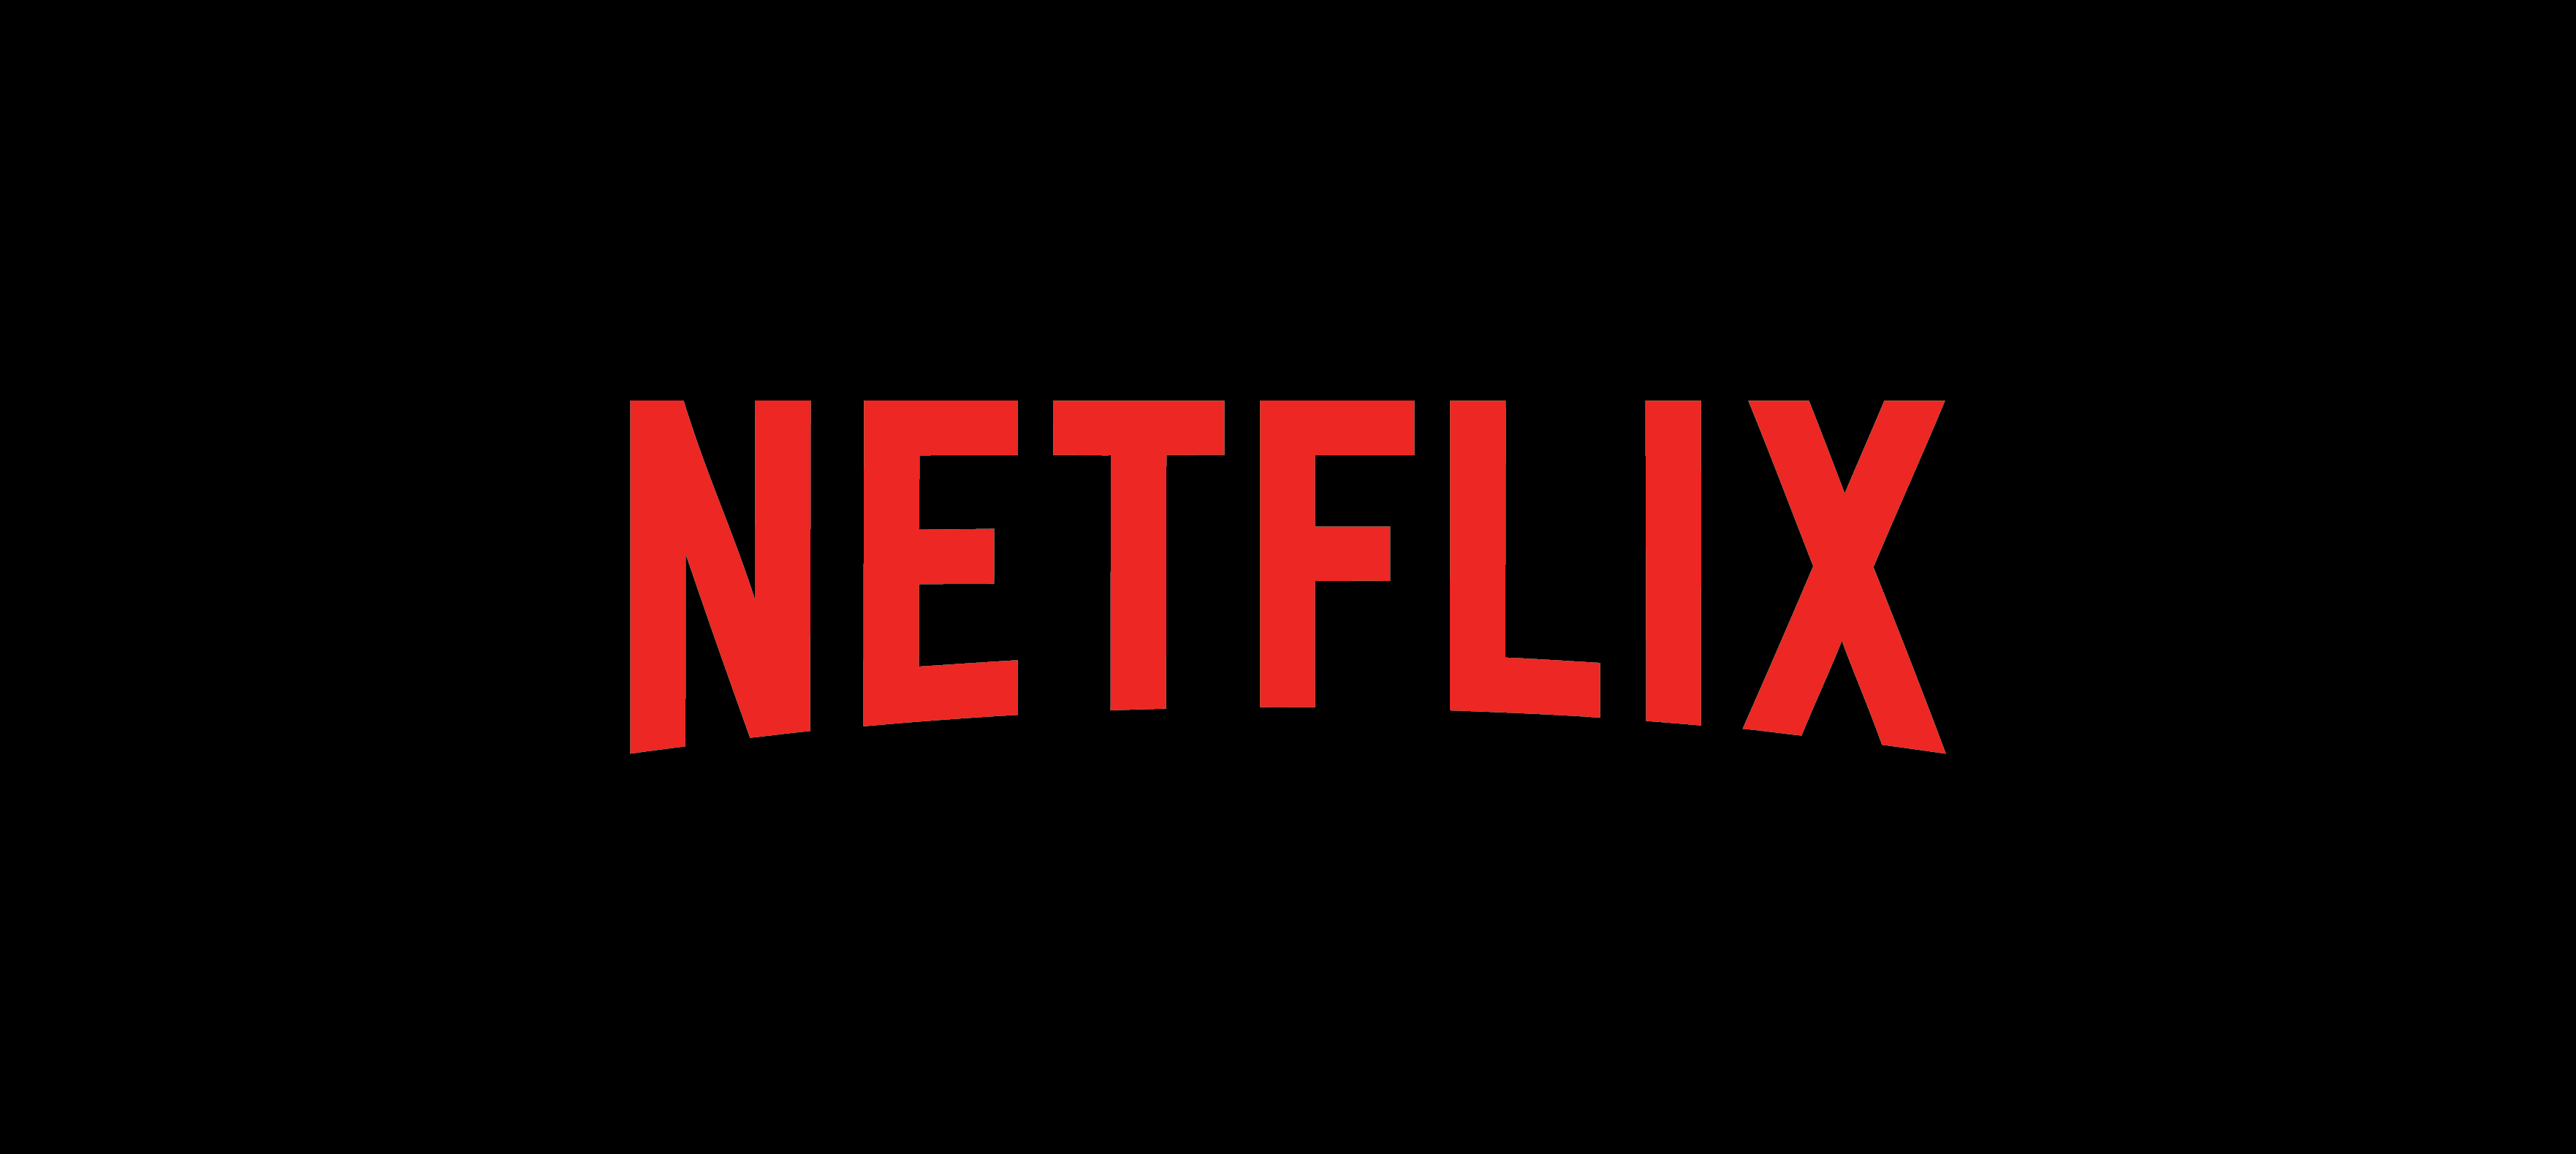 Hướng dẫn cách đăng ký Netflix vô cùng dễ dàng và nhanh chóng cùng MoMo